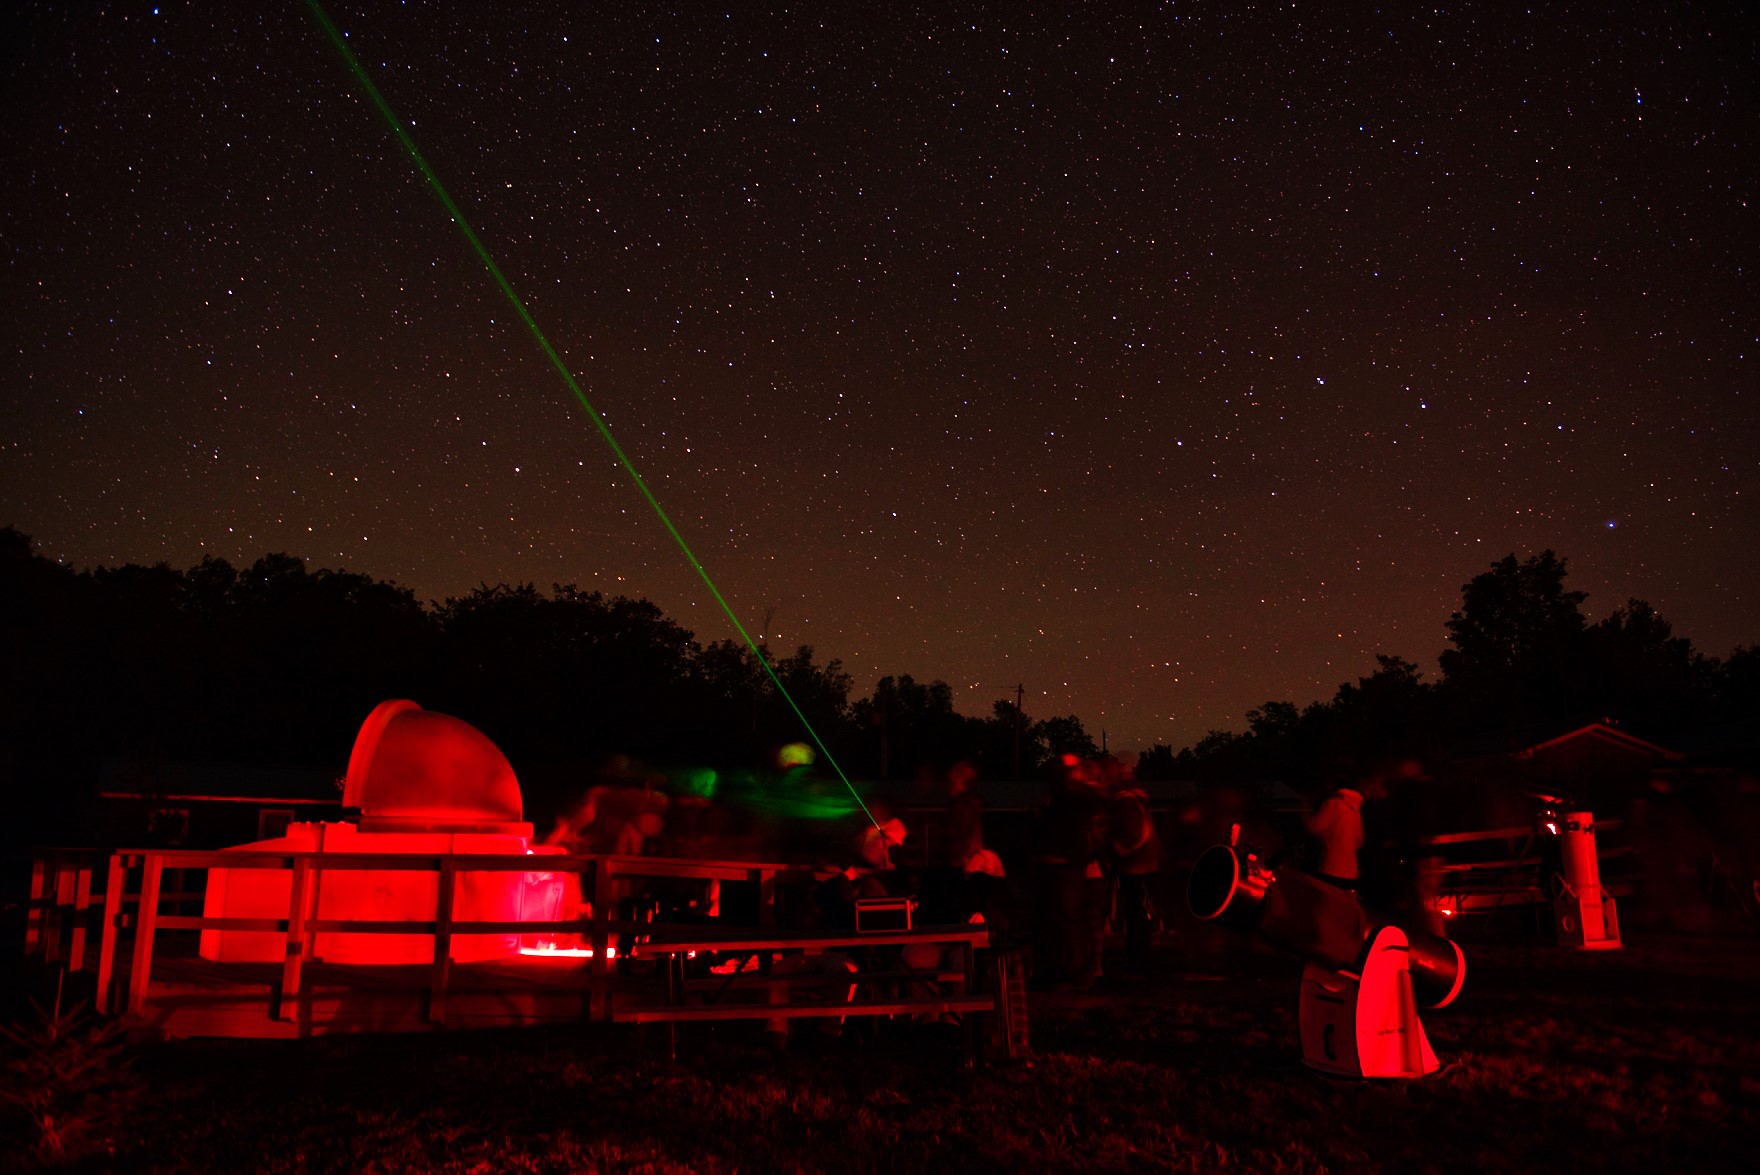 Des personnes profitant du complexe de l'observatoire de Killarney la nuit. Observatoire avec laser pointant vers les constellations.